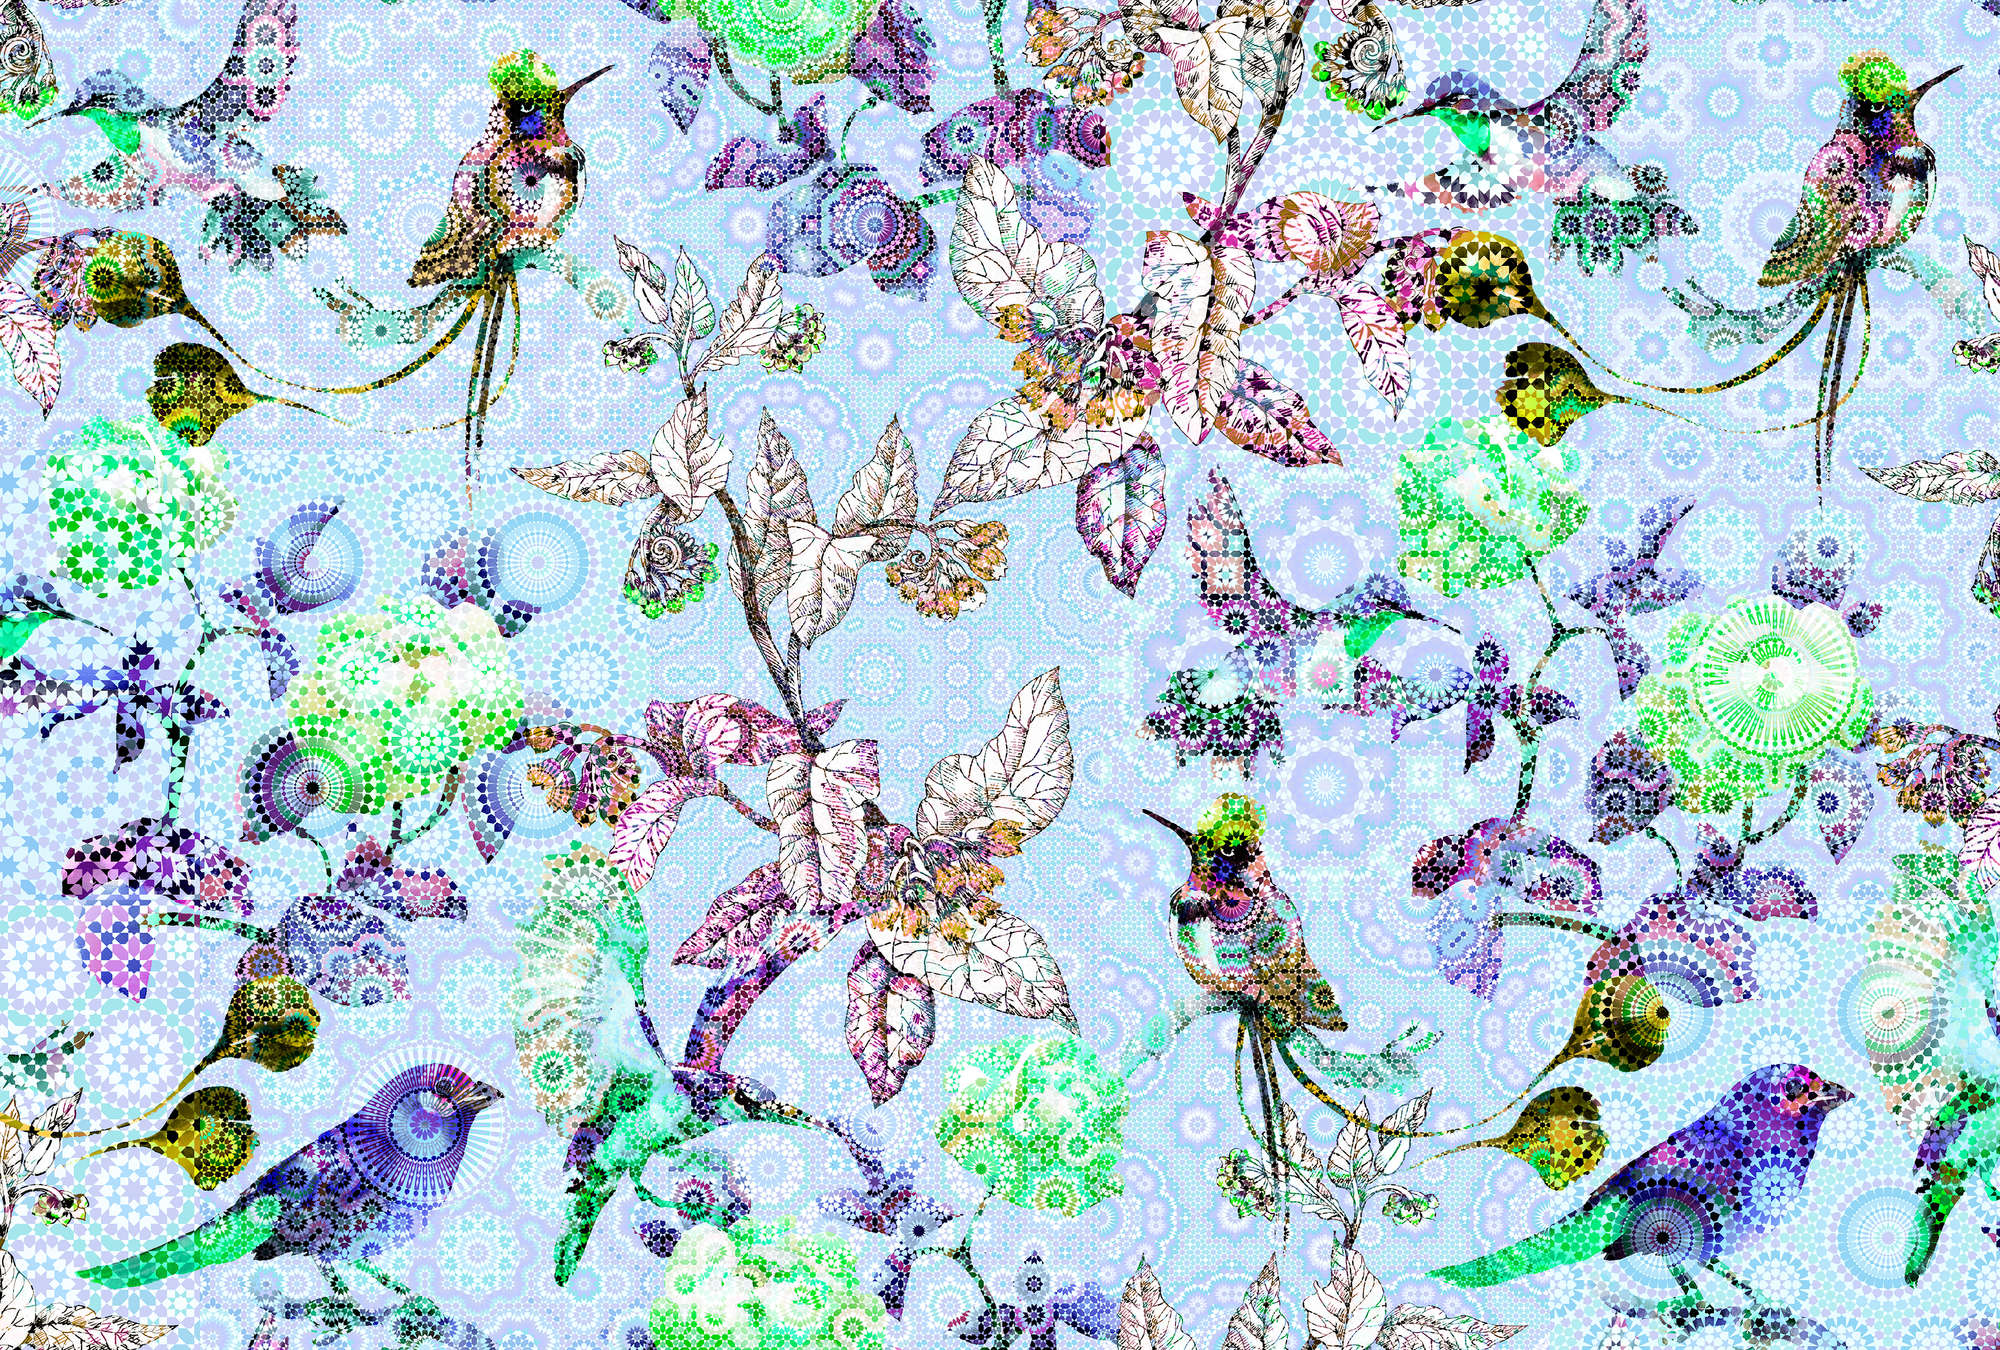             Carta da parati in stile mosaico Fiori e uccelli - Blu, verde
        